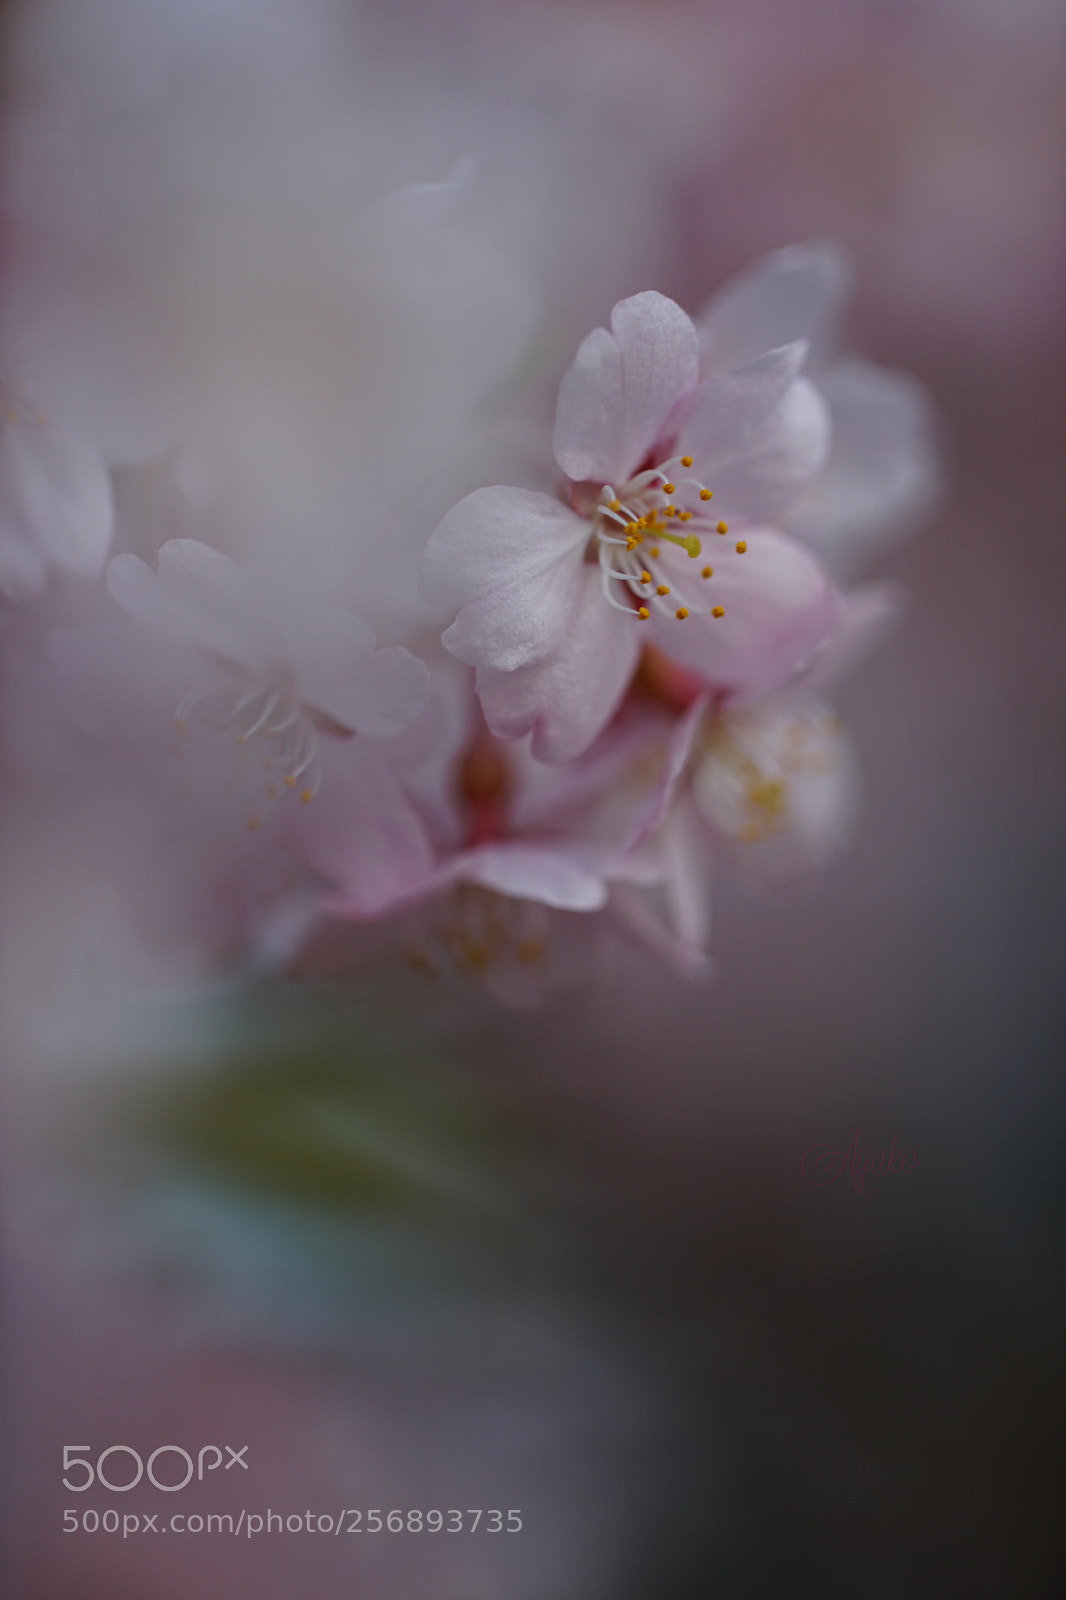 Sony a7 II sample photo. Sakura blossom 1 photography